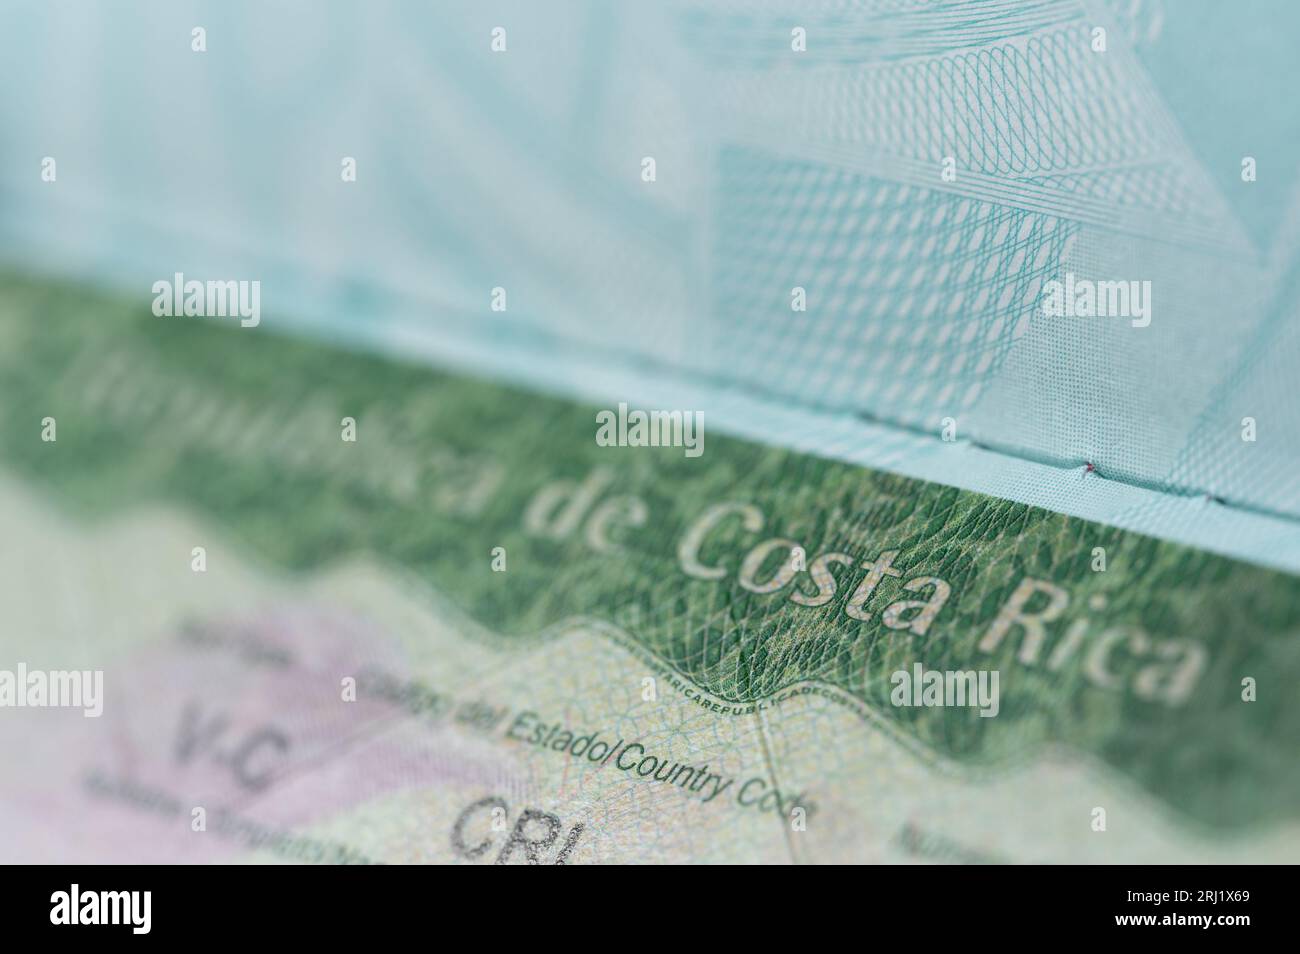 Reise costa rica Visum im Reisepass Makro Nahansicht Stockfoto